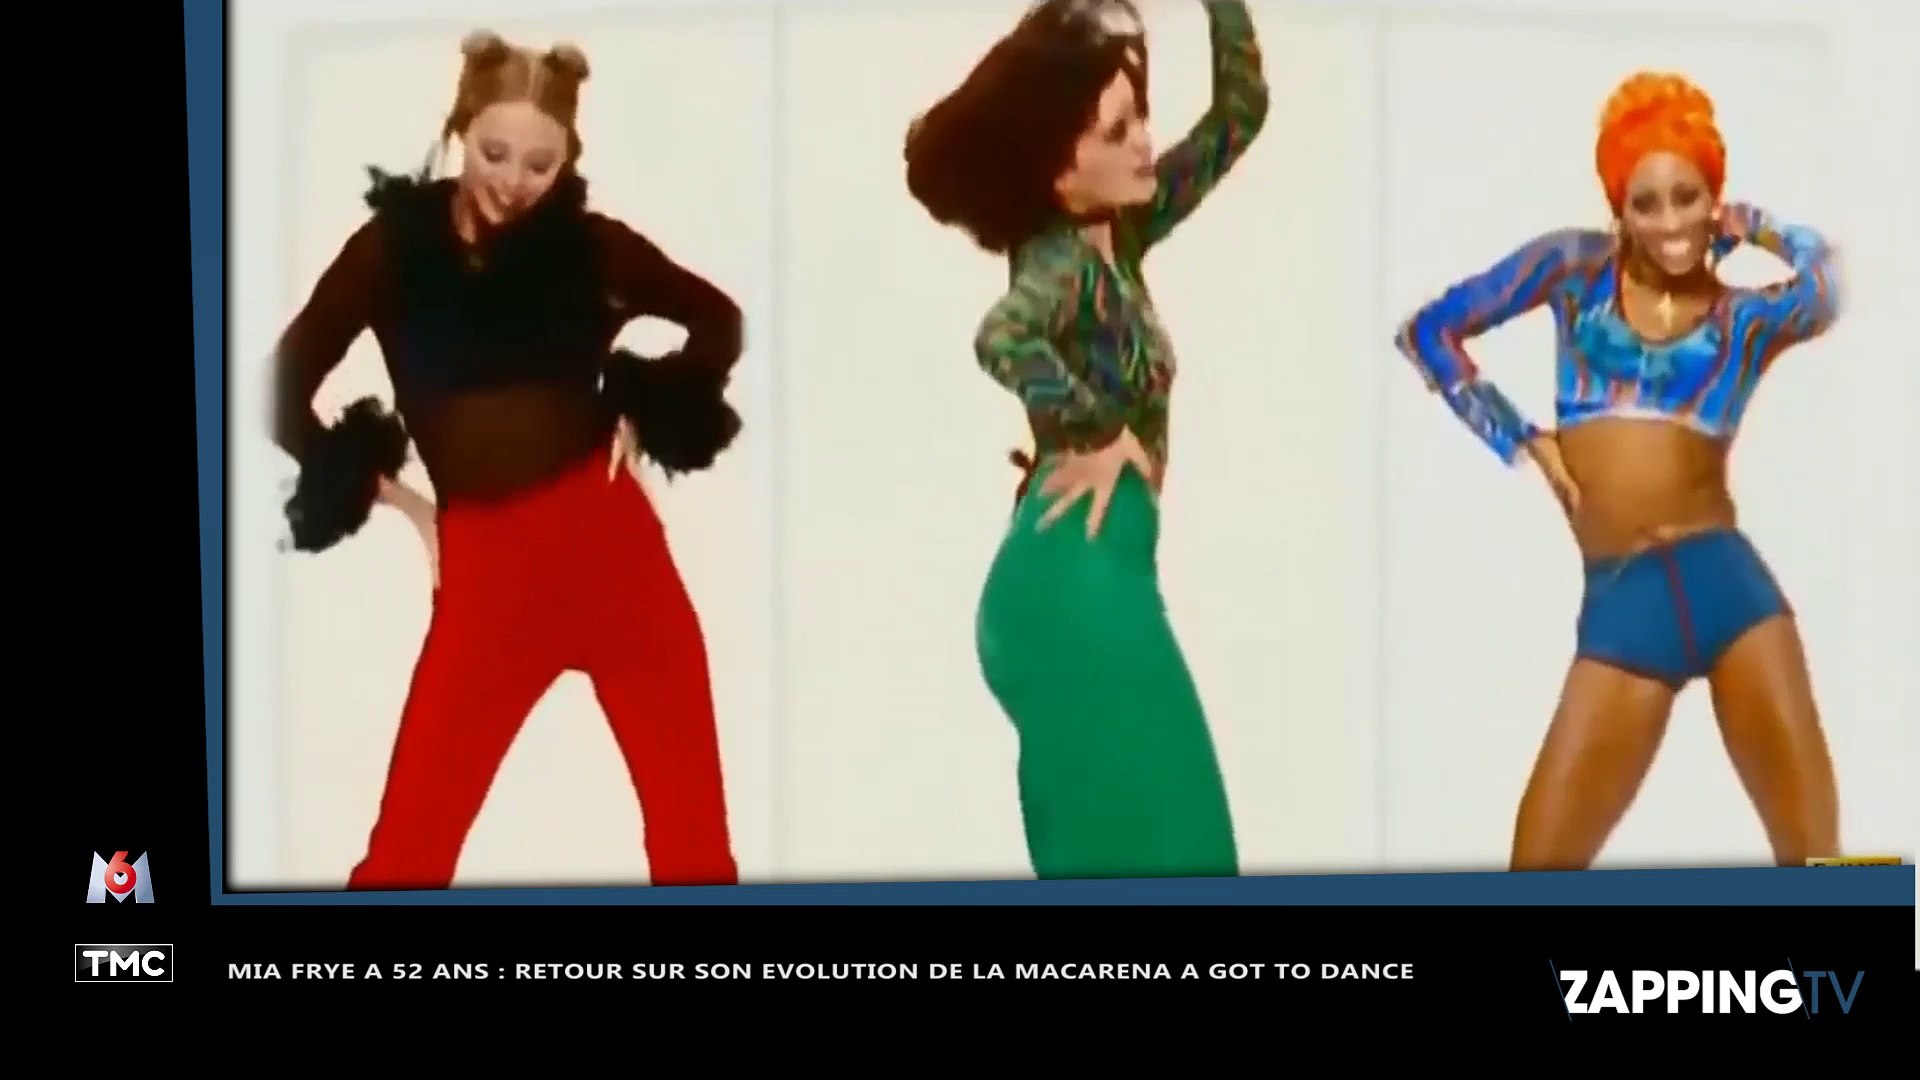 Mia Frye a 52 : la Macarena, Popstars, Got to dance... retour sur son  évolution (vidéo) - Vidéo Dailymotion